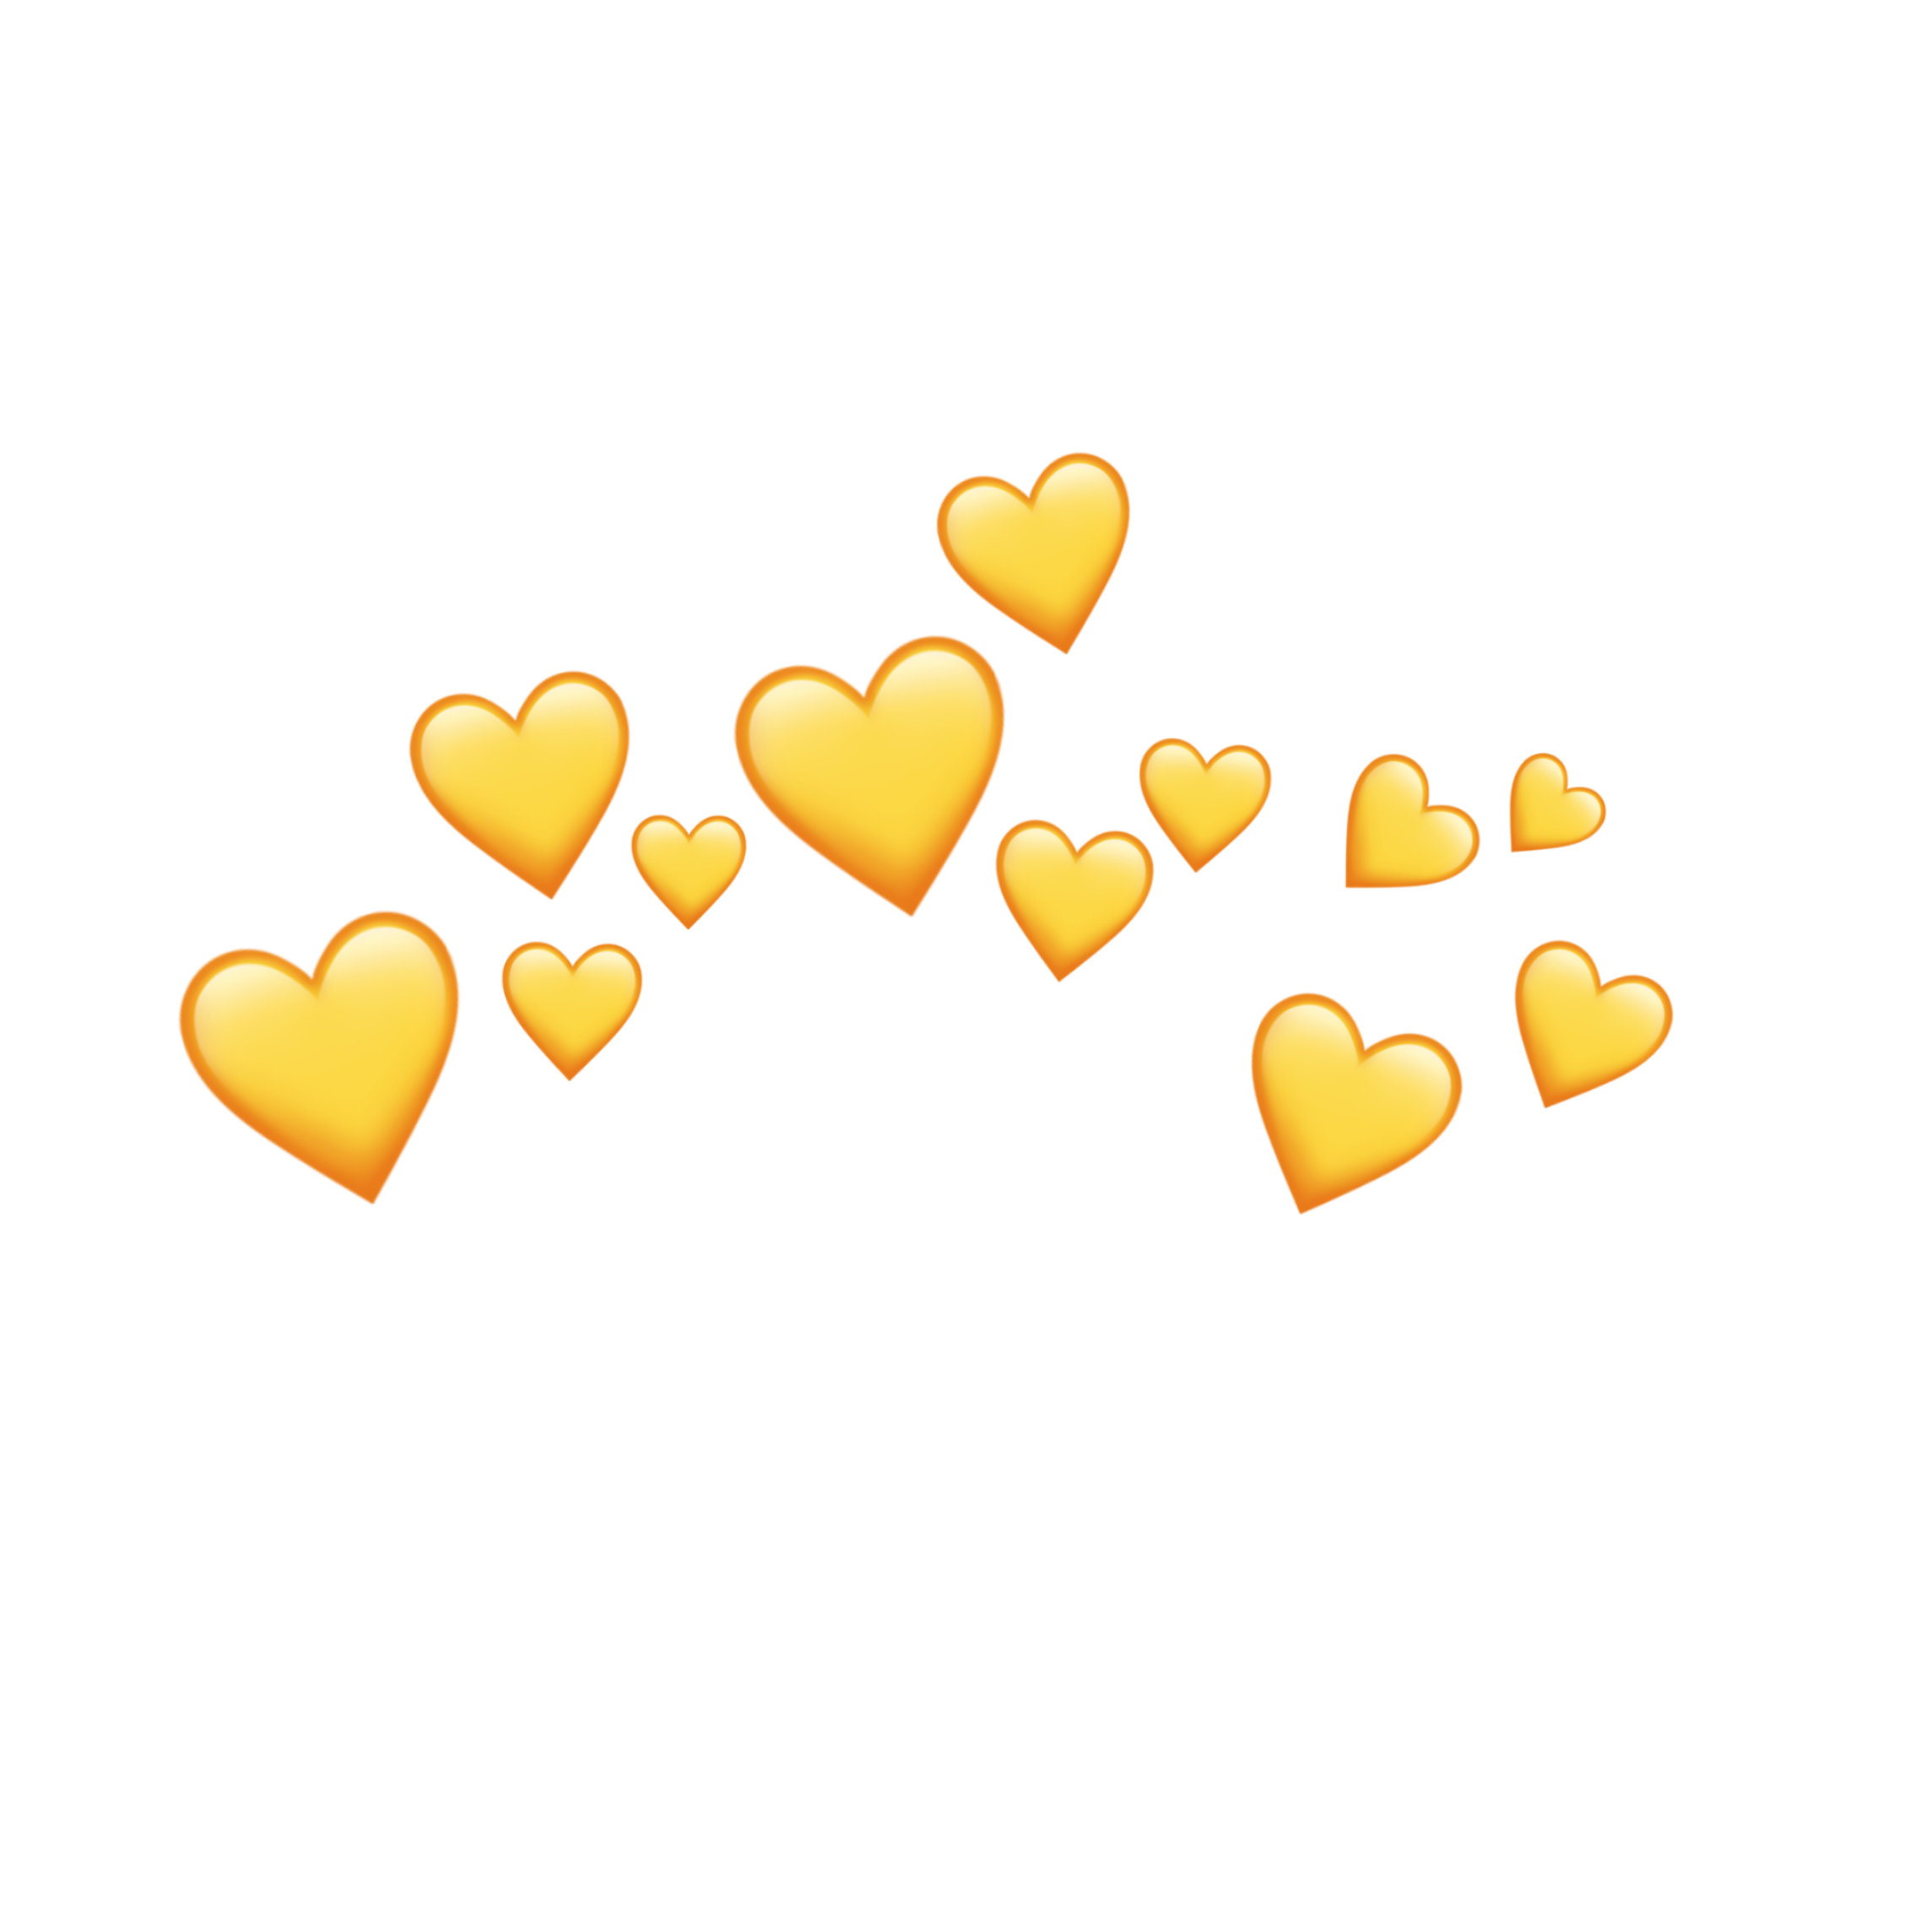 This visual is about emojicrown crown emoji heartcrown freetoedit #emojicro...